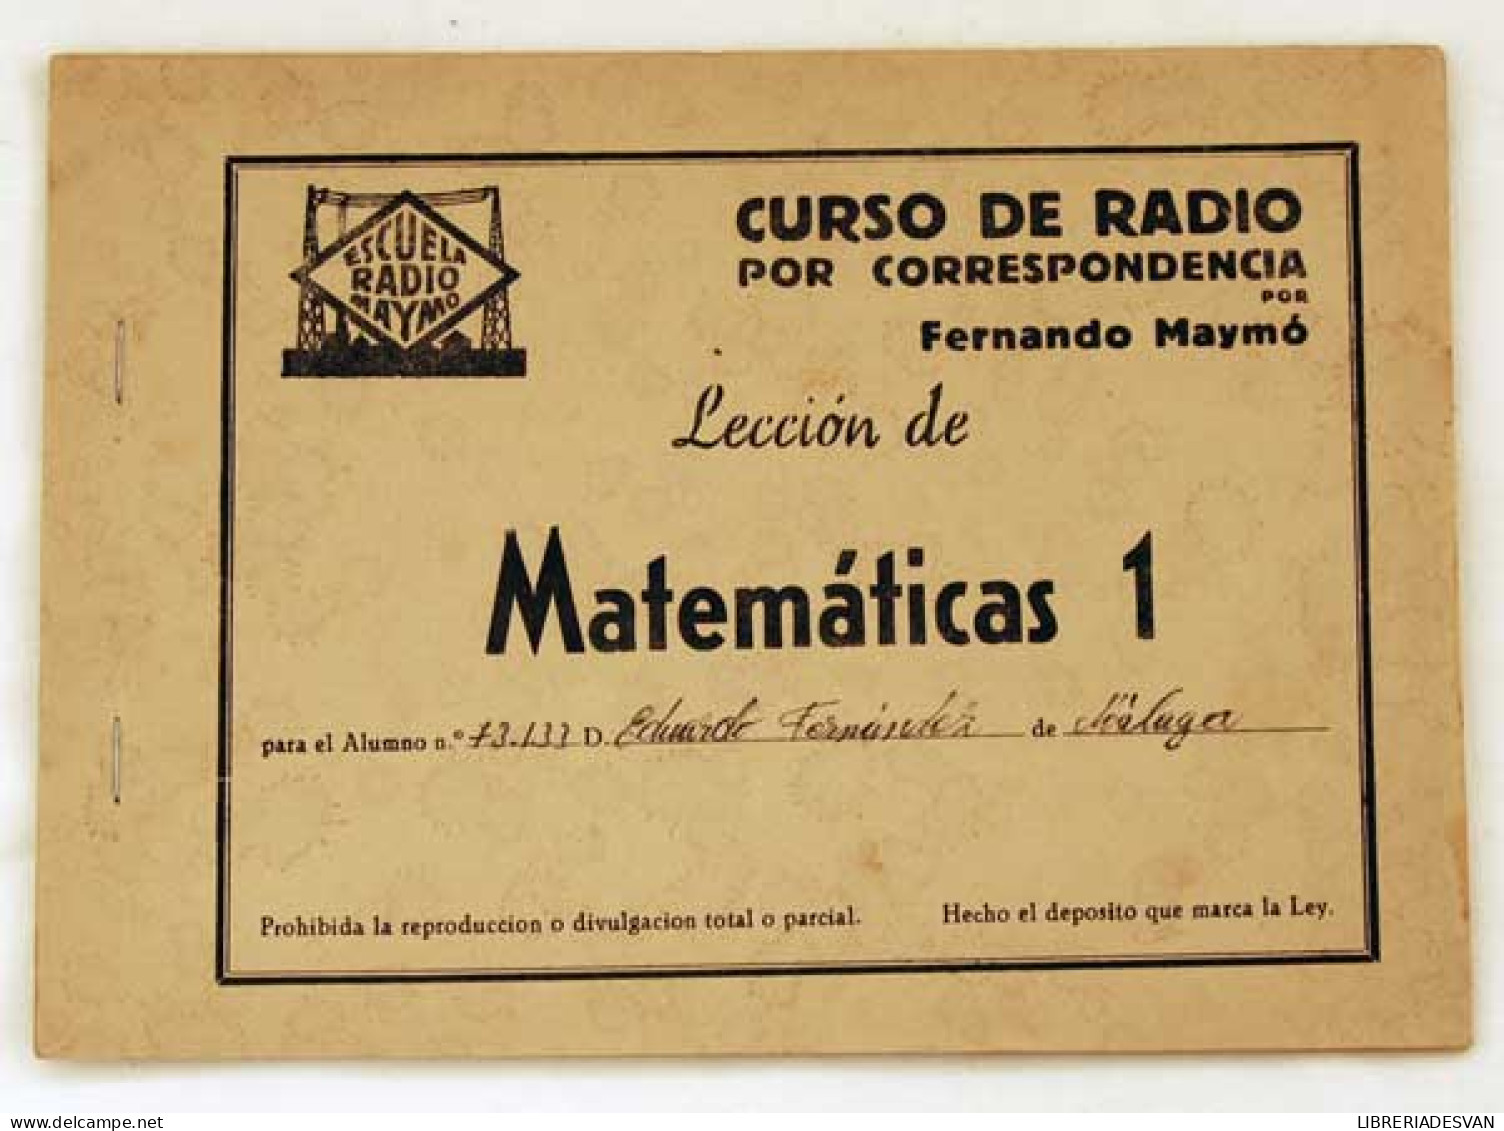 Curso De Radio Por Correspondencia. Lección Matemáticas 1. Fernando Maymó - Ciencias, Manuales, Oficios